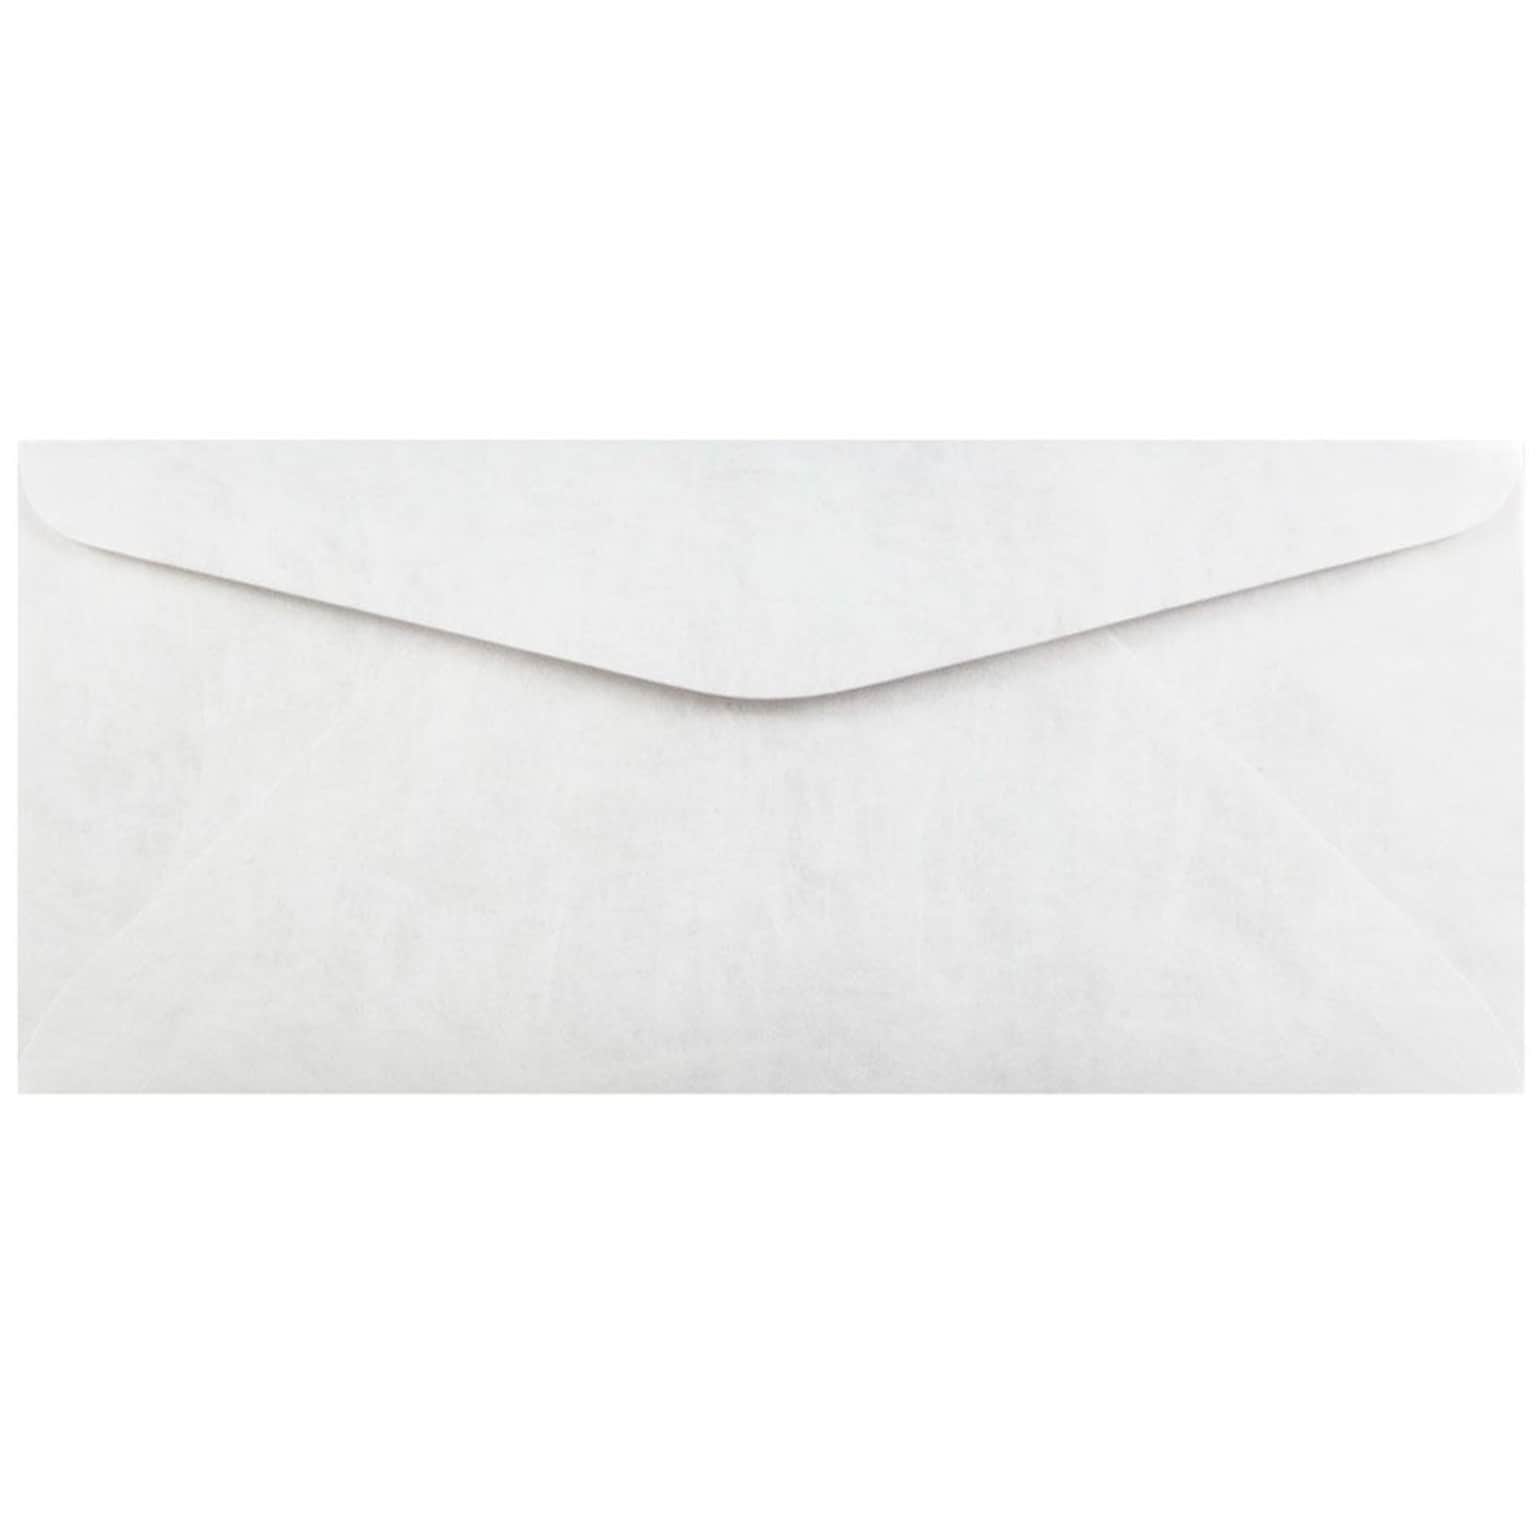 JAM Paper #11 Tear-Proof Envelopes, 4.5 x 10.375, White, 25/Pack (2131078)